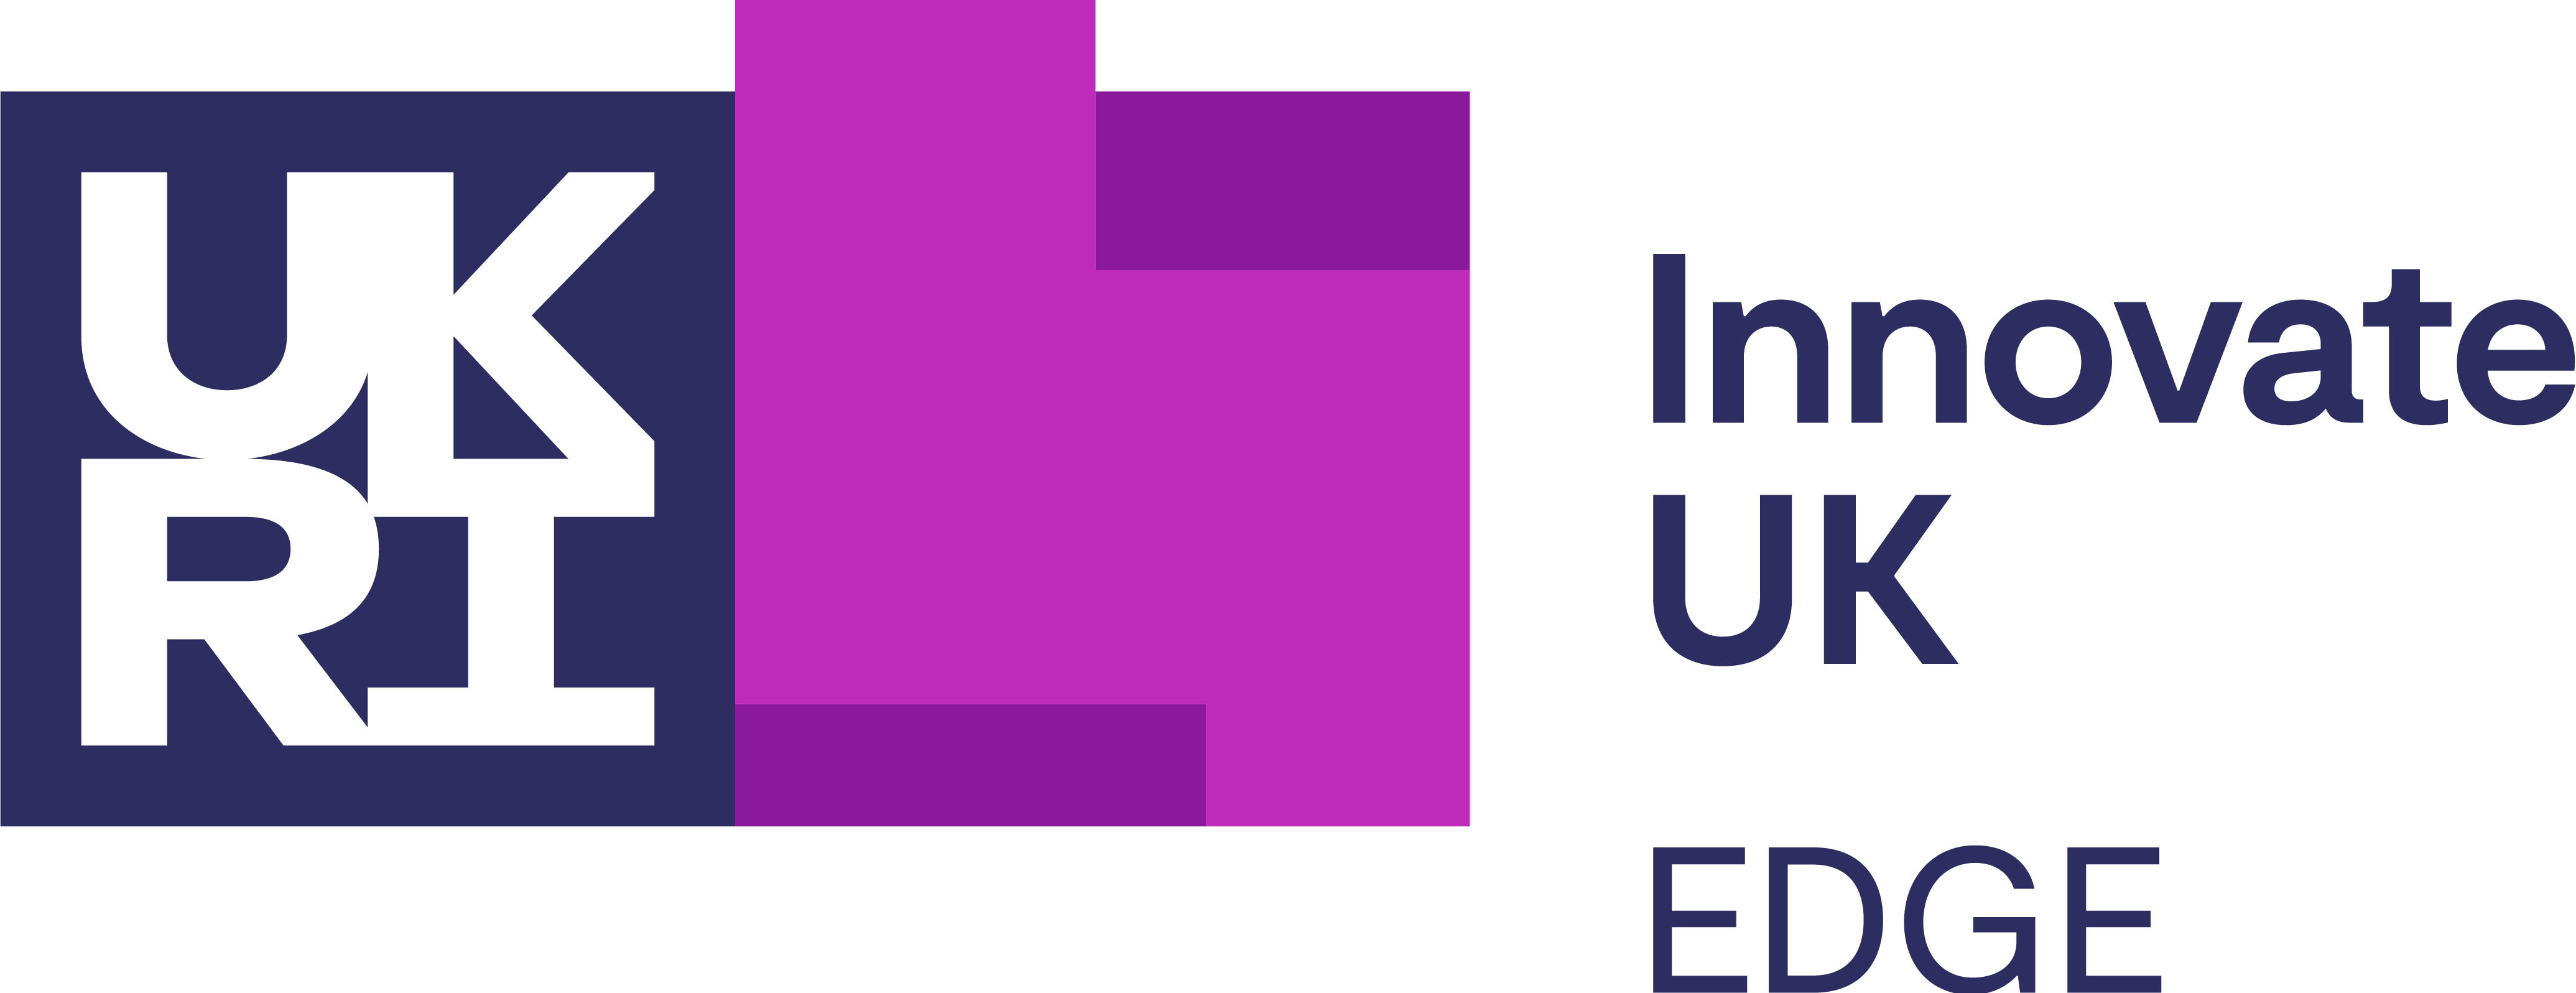 Innovate UK EDGE logo